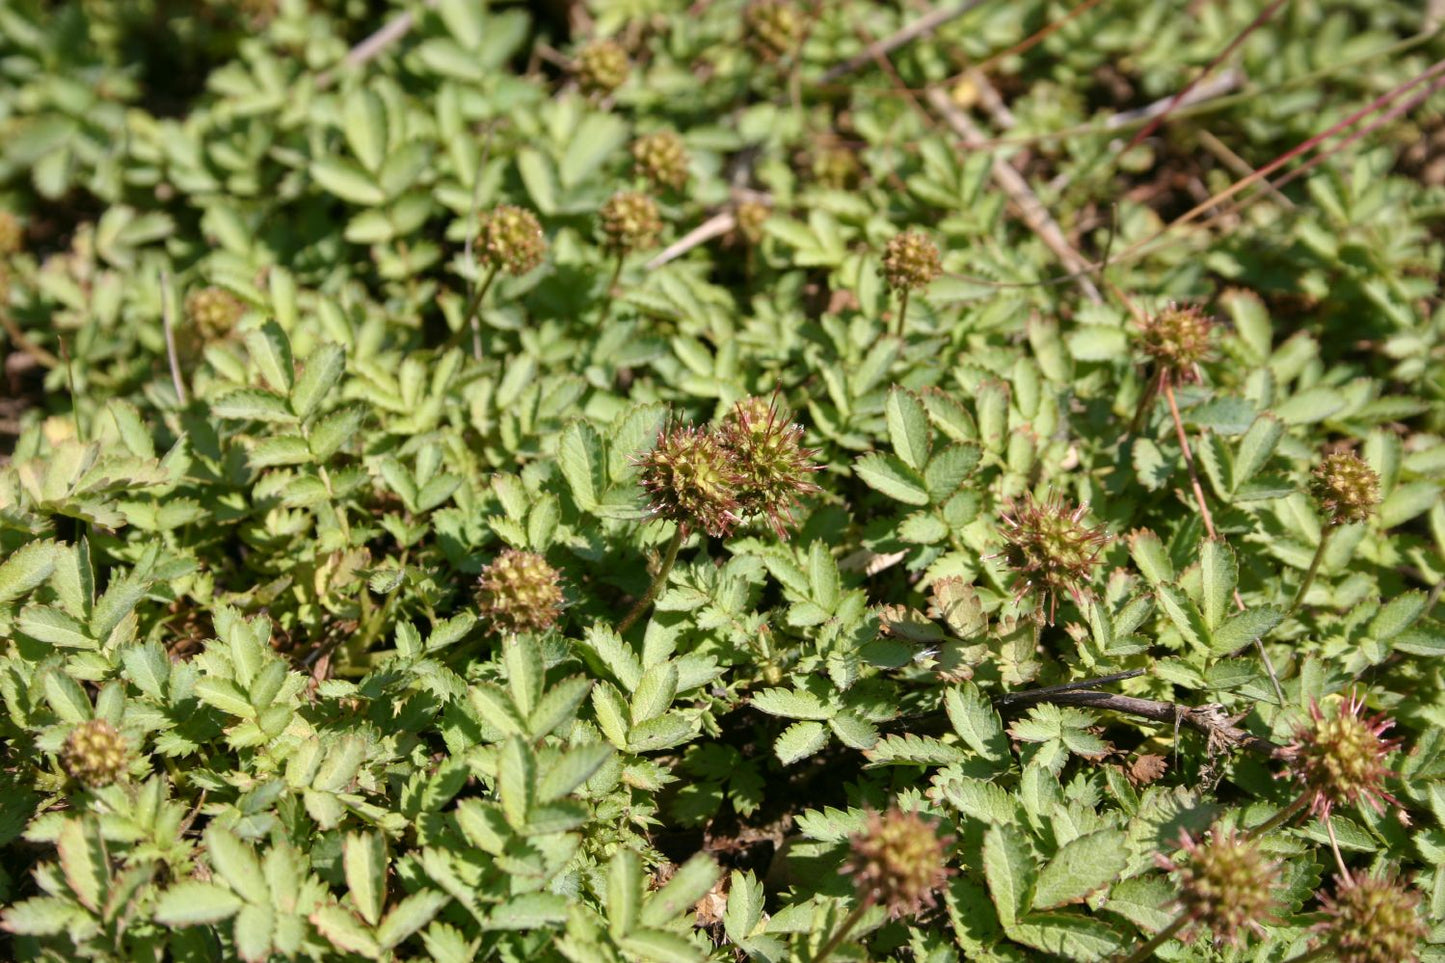 Acaena buchananii (Blaugrünes Stachelnüsschen)